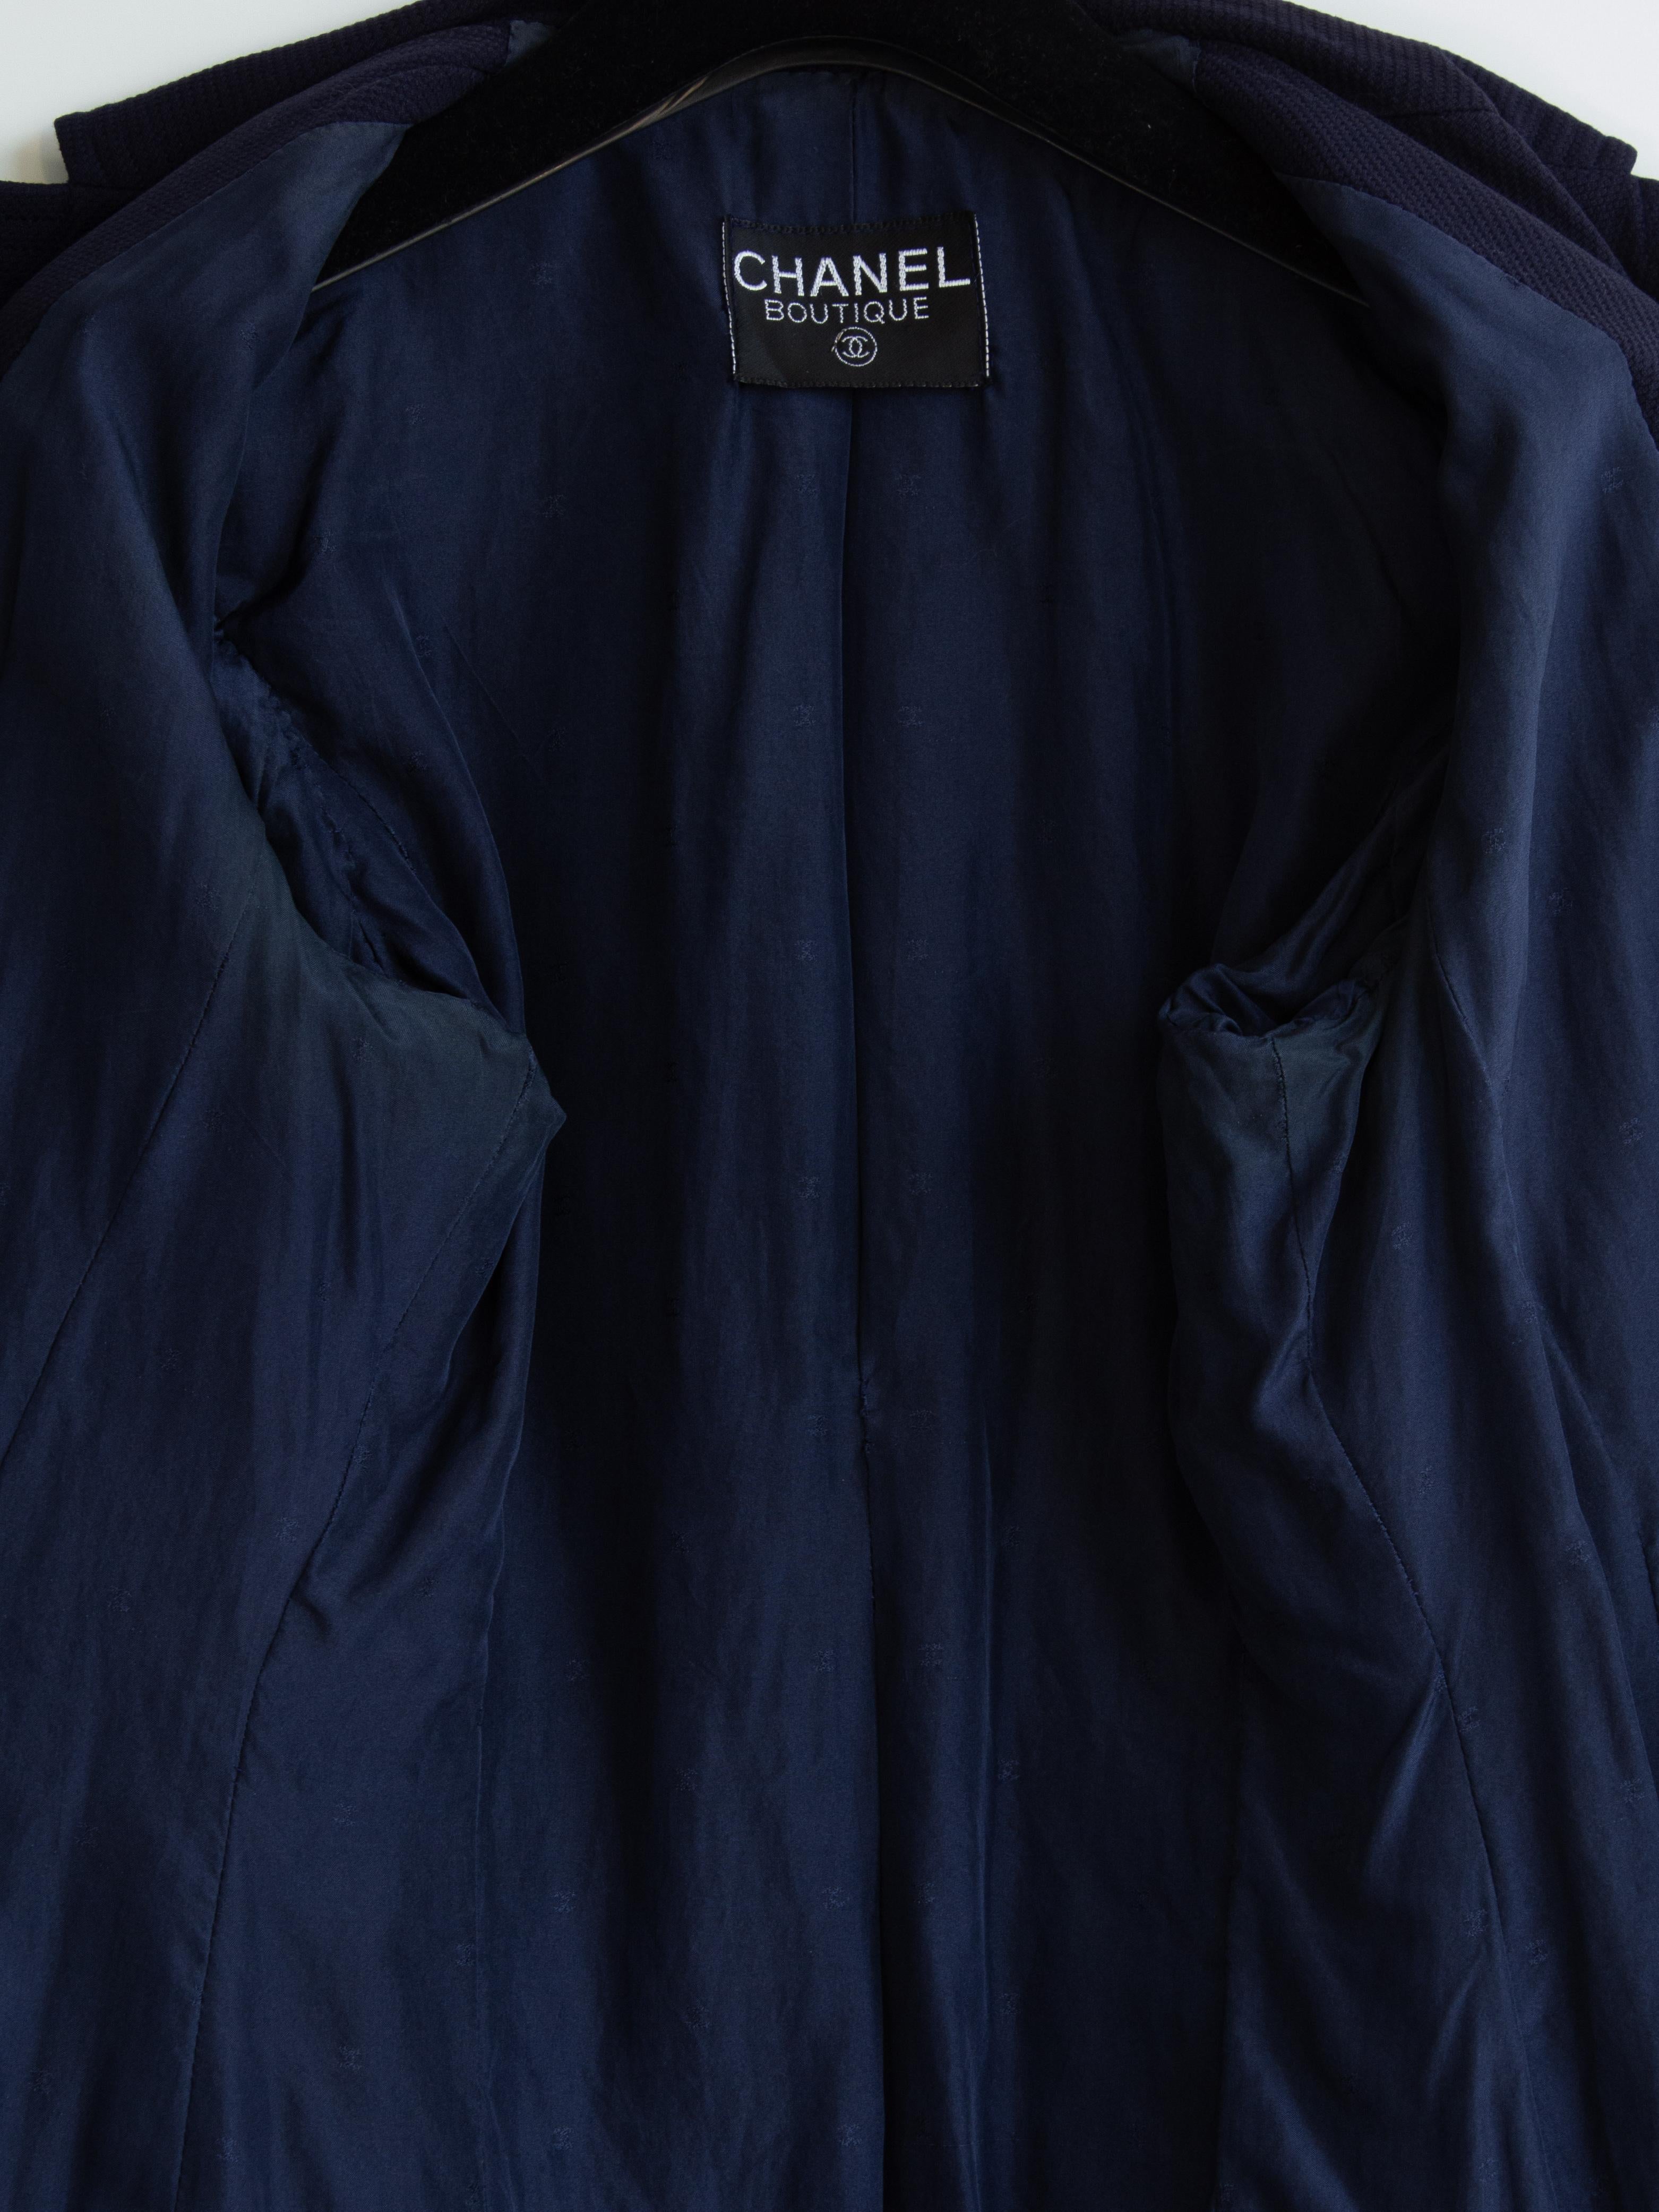 Chanel Vintage S/S1993 Navy Blue Cotton Gold Chain CC Medallion 93P Jacket Suit 9